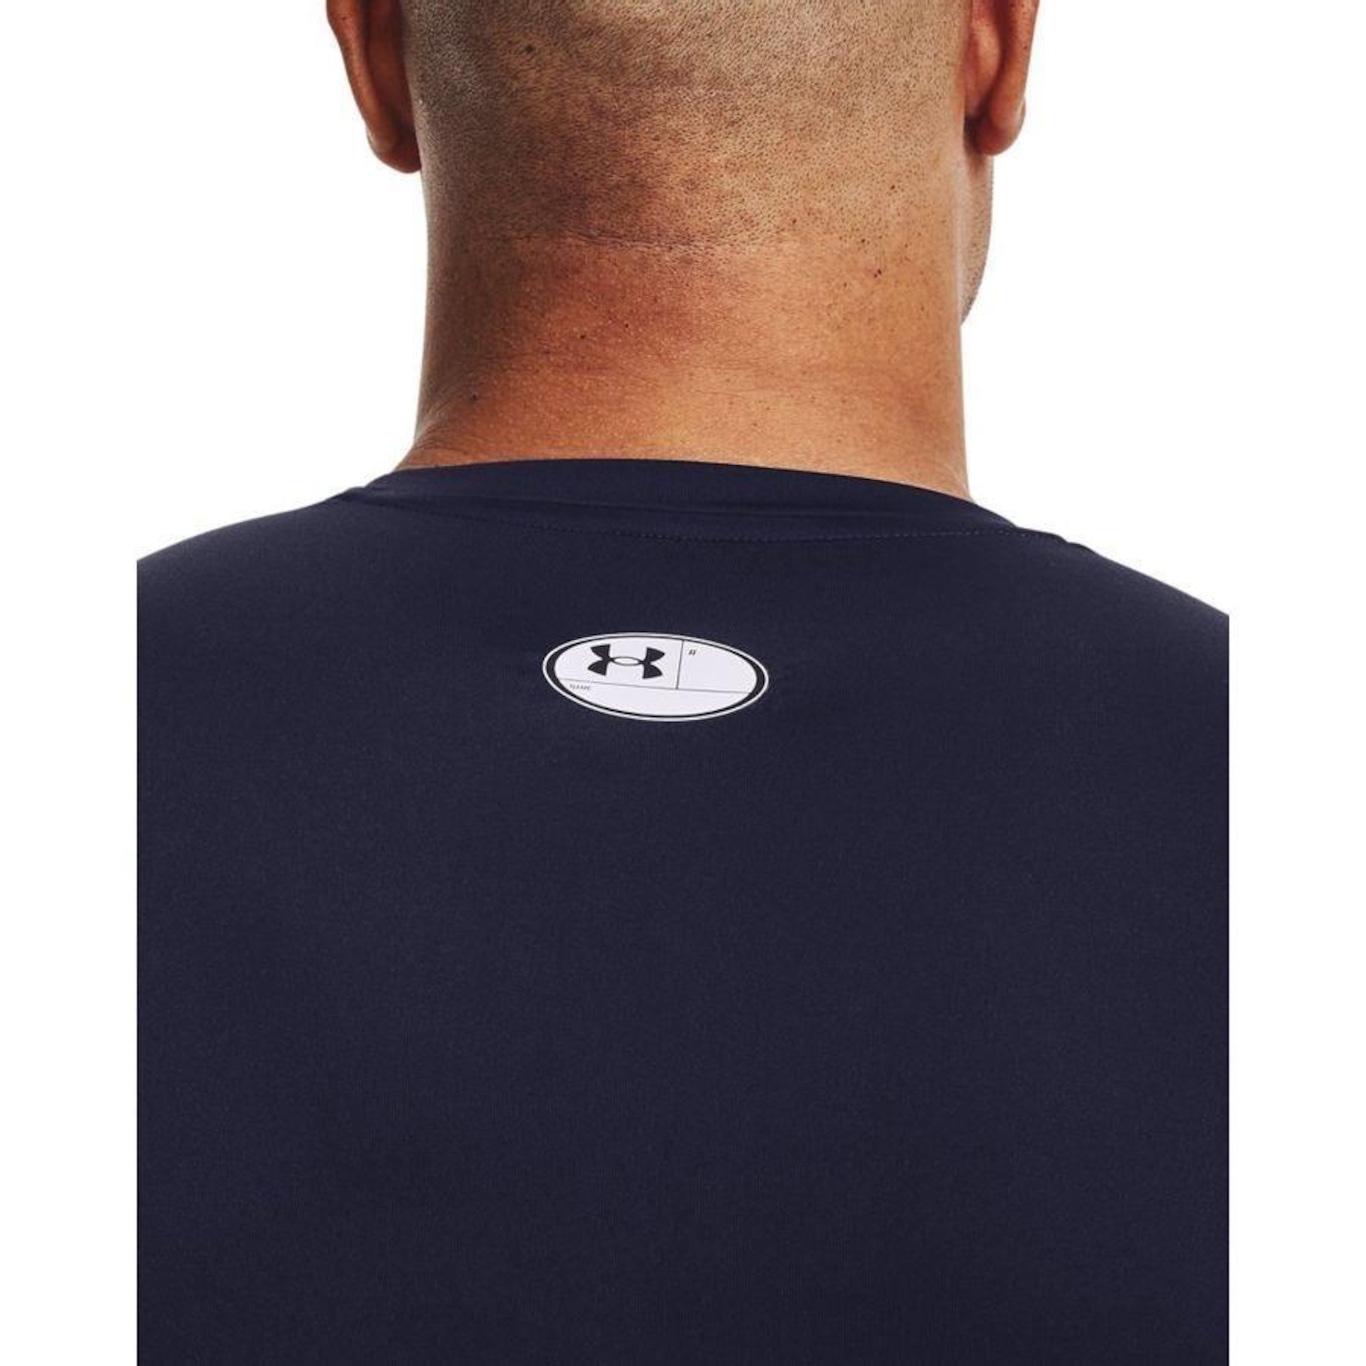 camiseta-manga-longa-de-compressao-masculina-under-armour-hg-comp